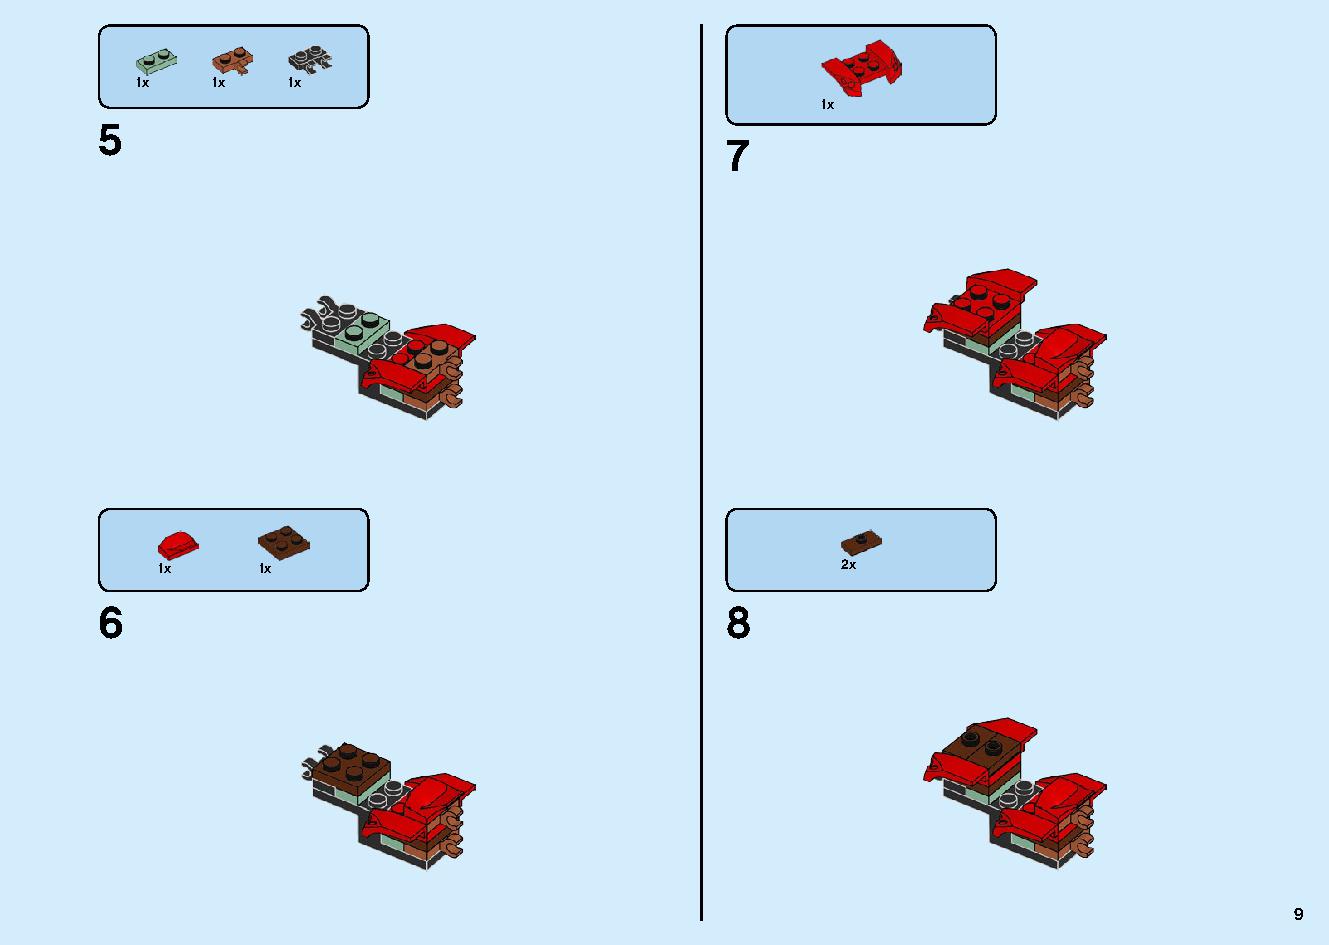 陸上戦艦バウンティ号 70677 レゴの商品情報 レゴの説明書・組立方法 9 page